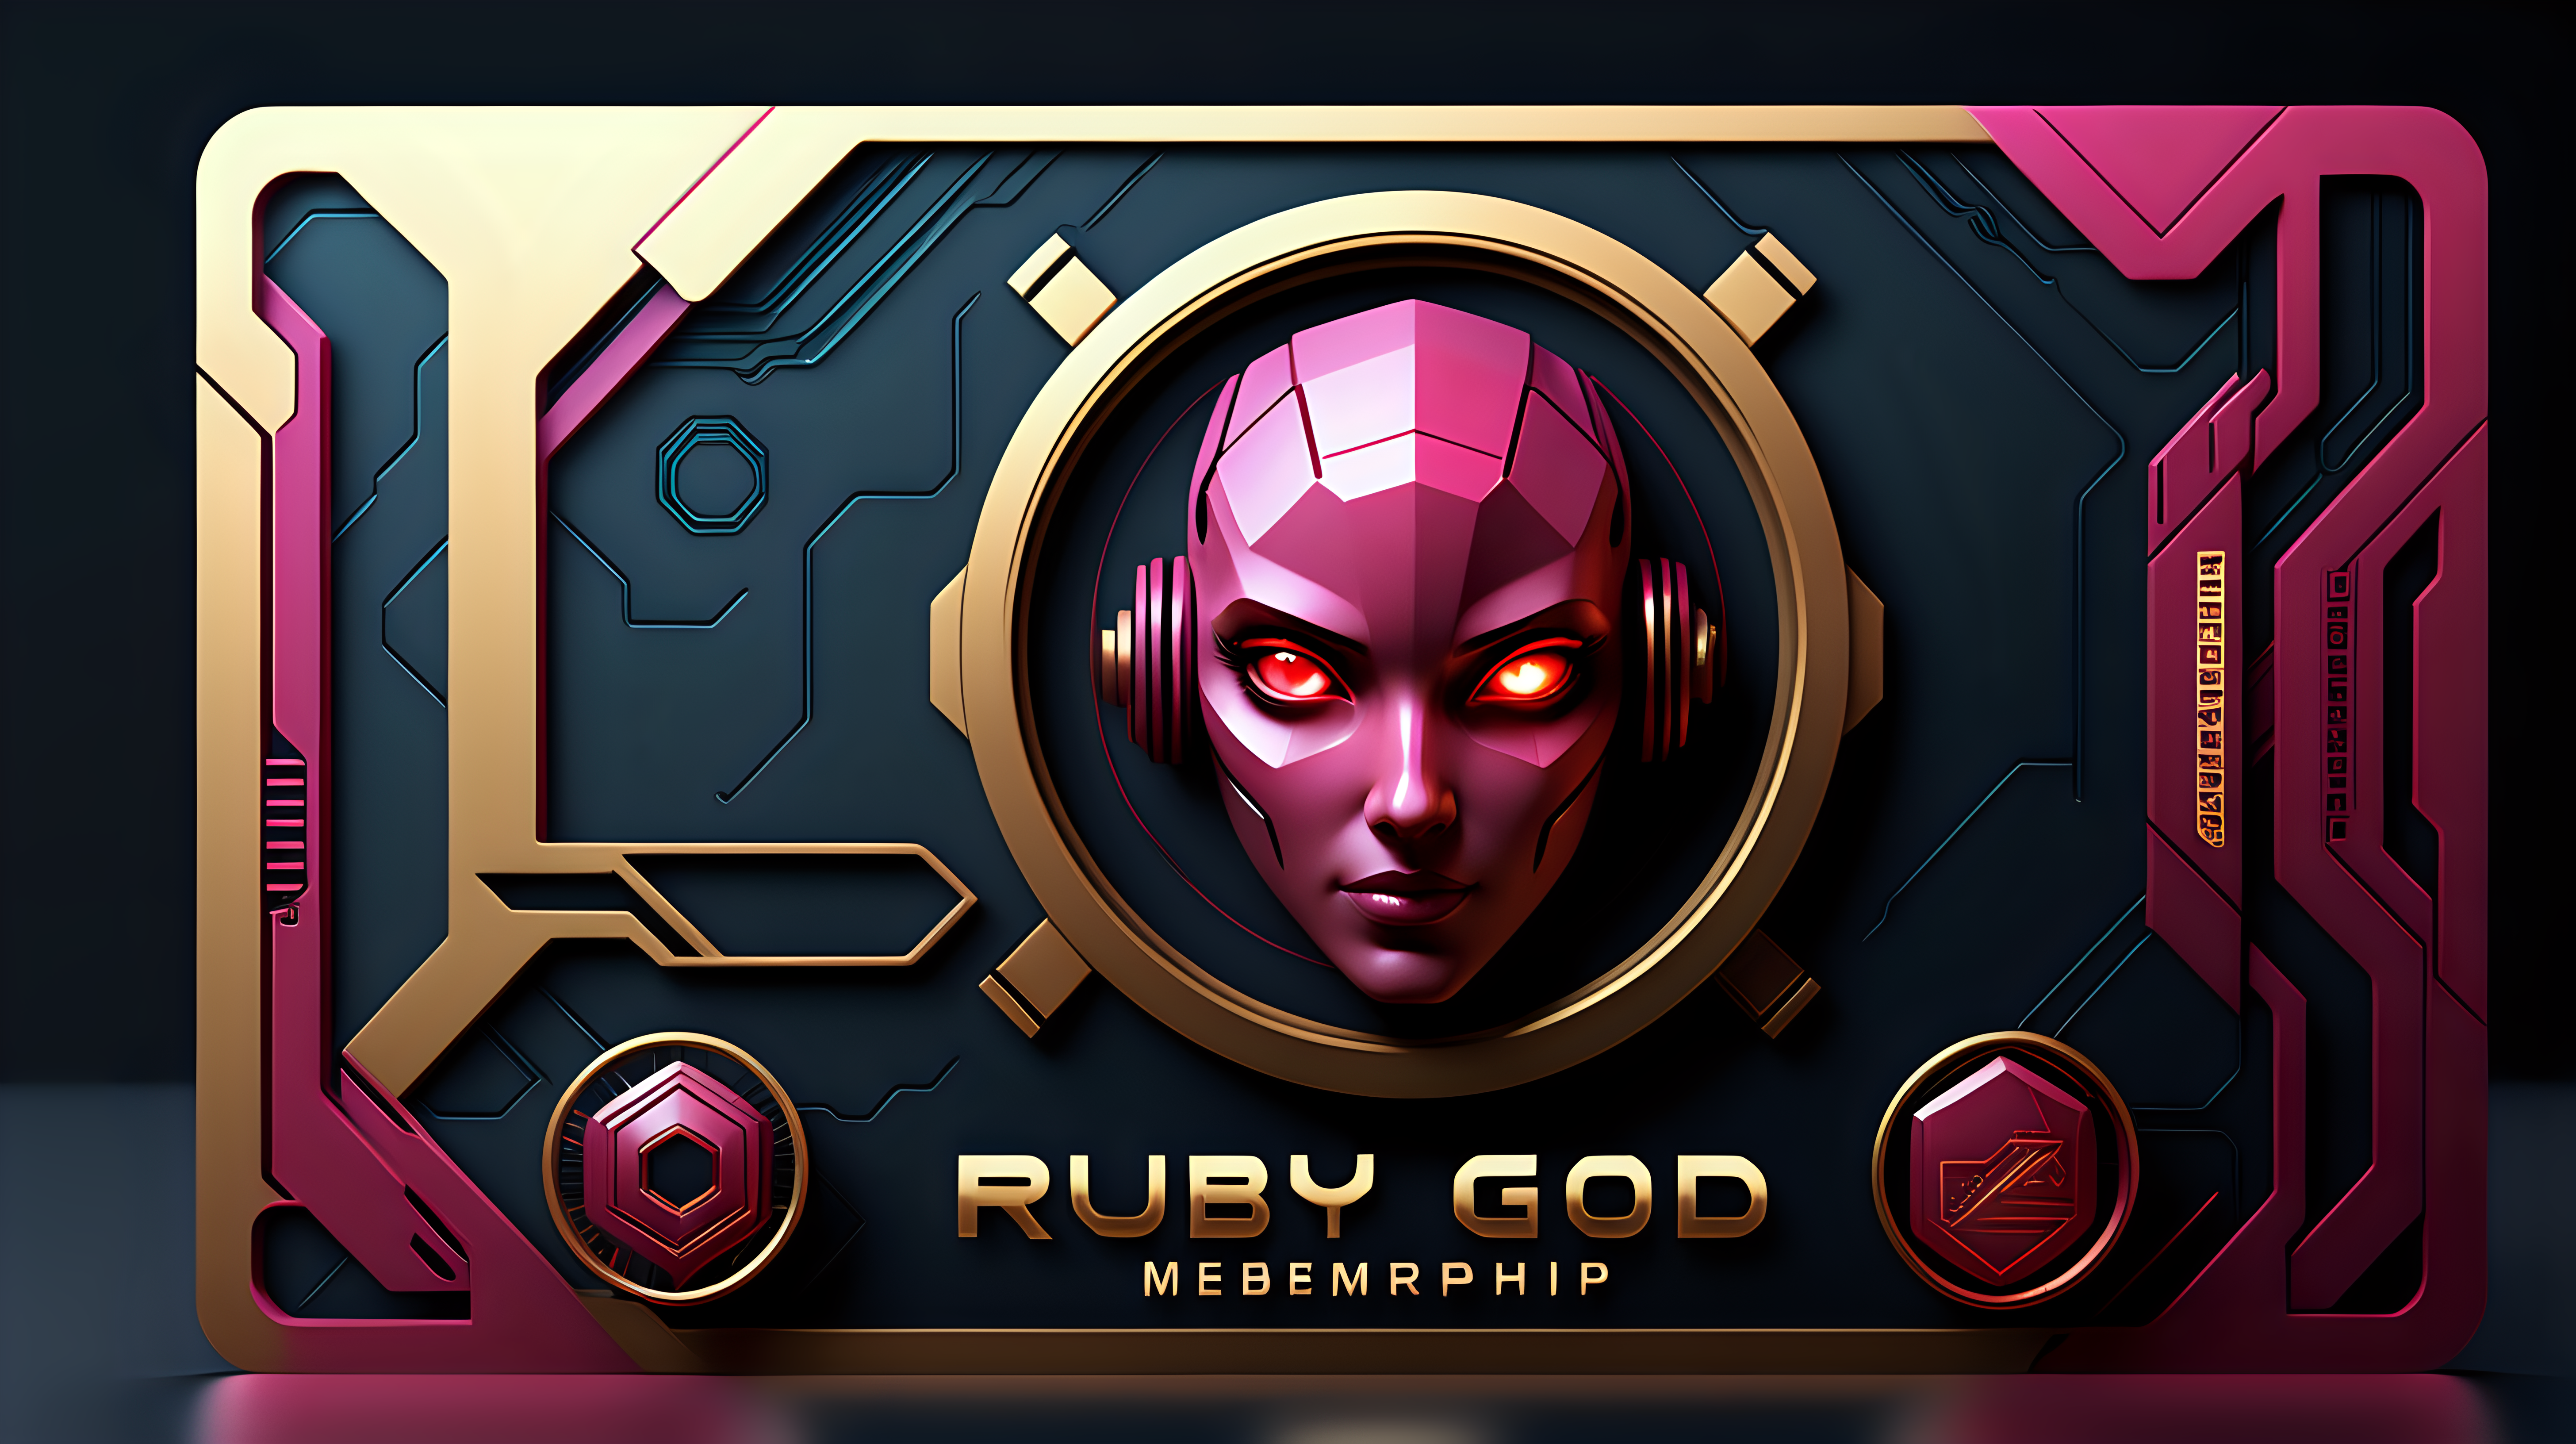 ruby gold membership card, cyberpunk theme